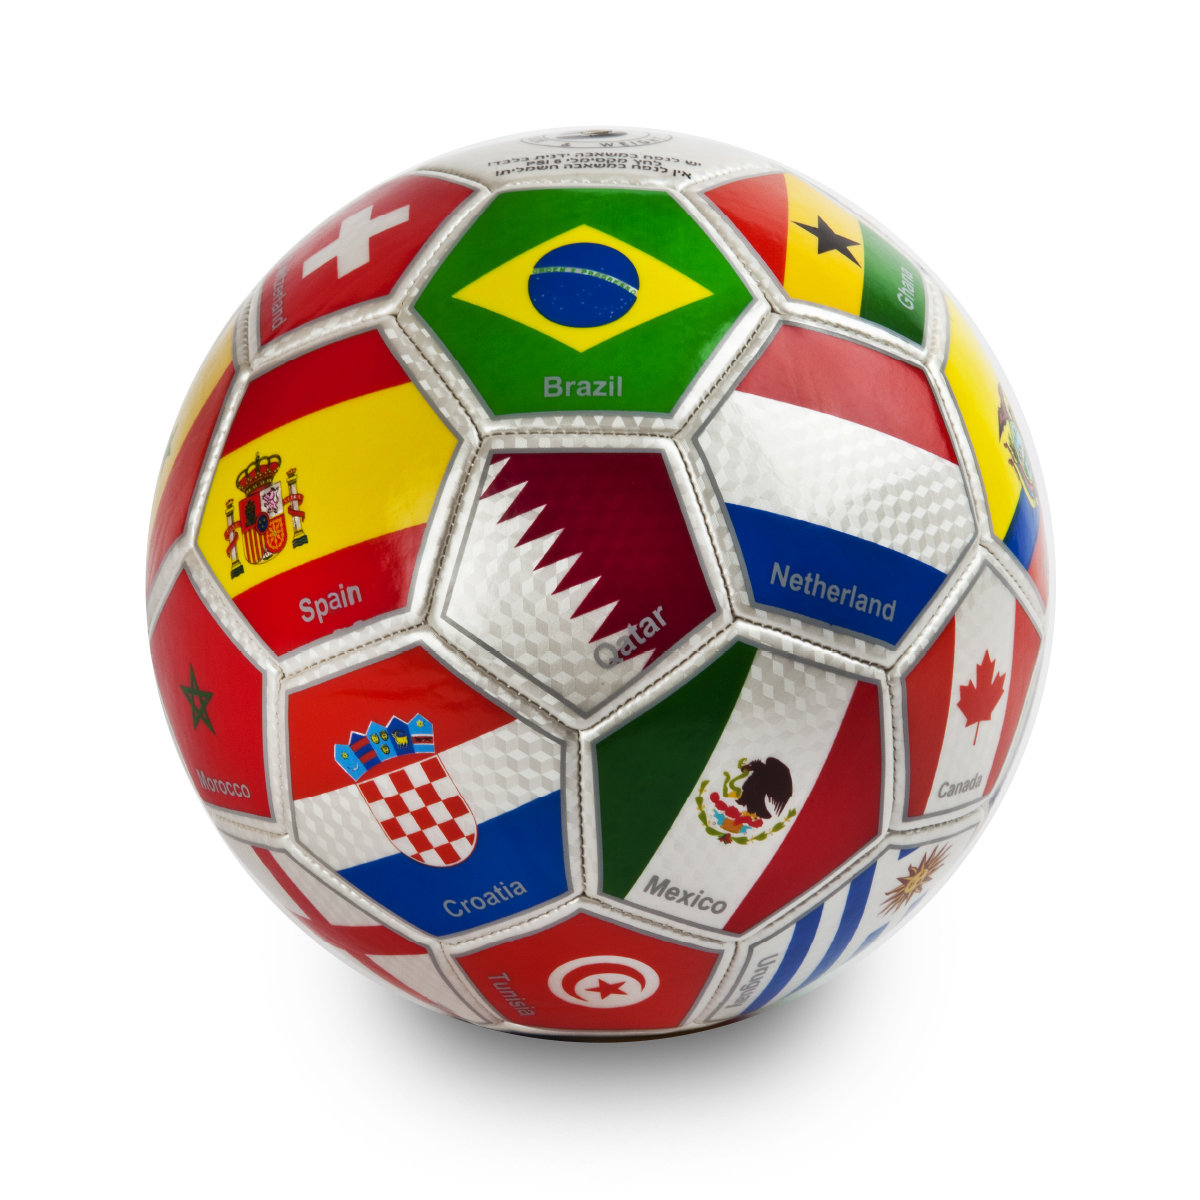 מונדיאל - כדורגל עם דגל המדינות המשתתפות במונדיאל.
עשוי מחומר TPU חזק ועמיד.
אינו סופג מים.
מתאים למשחק במשטחים שונים.
נקב ניפוח השומר על לחץ אוויר זמן רב.
הכדור מגיע לא מנופח.
כדור חוקי מספר 5.